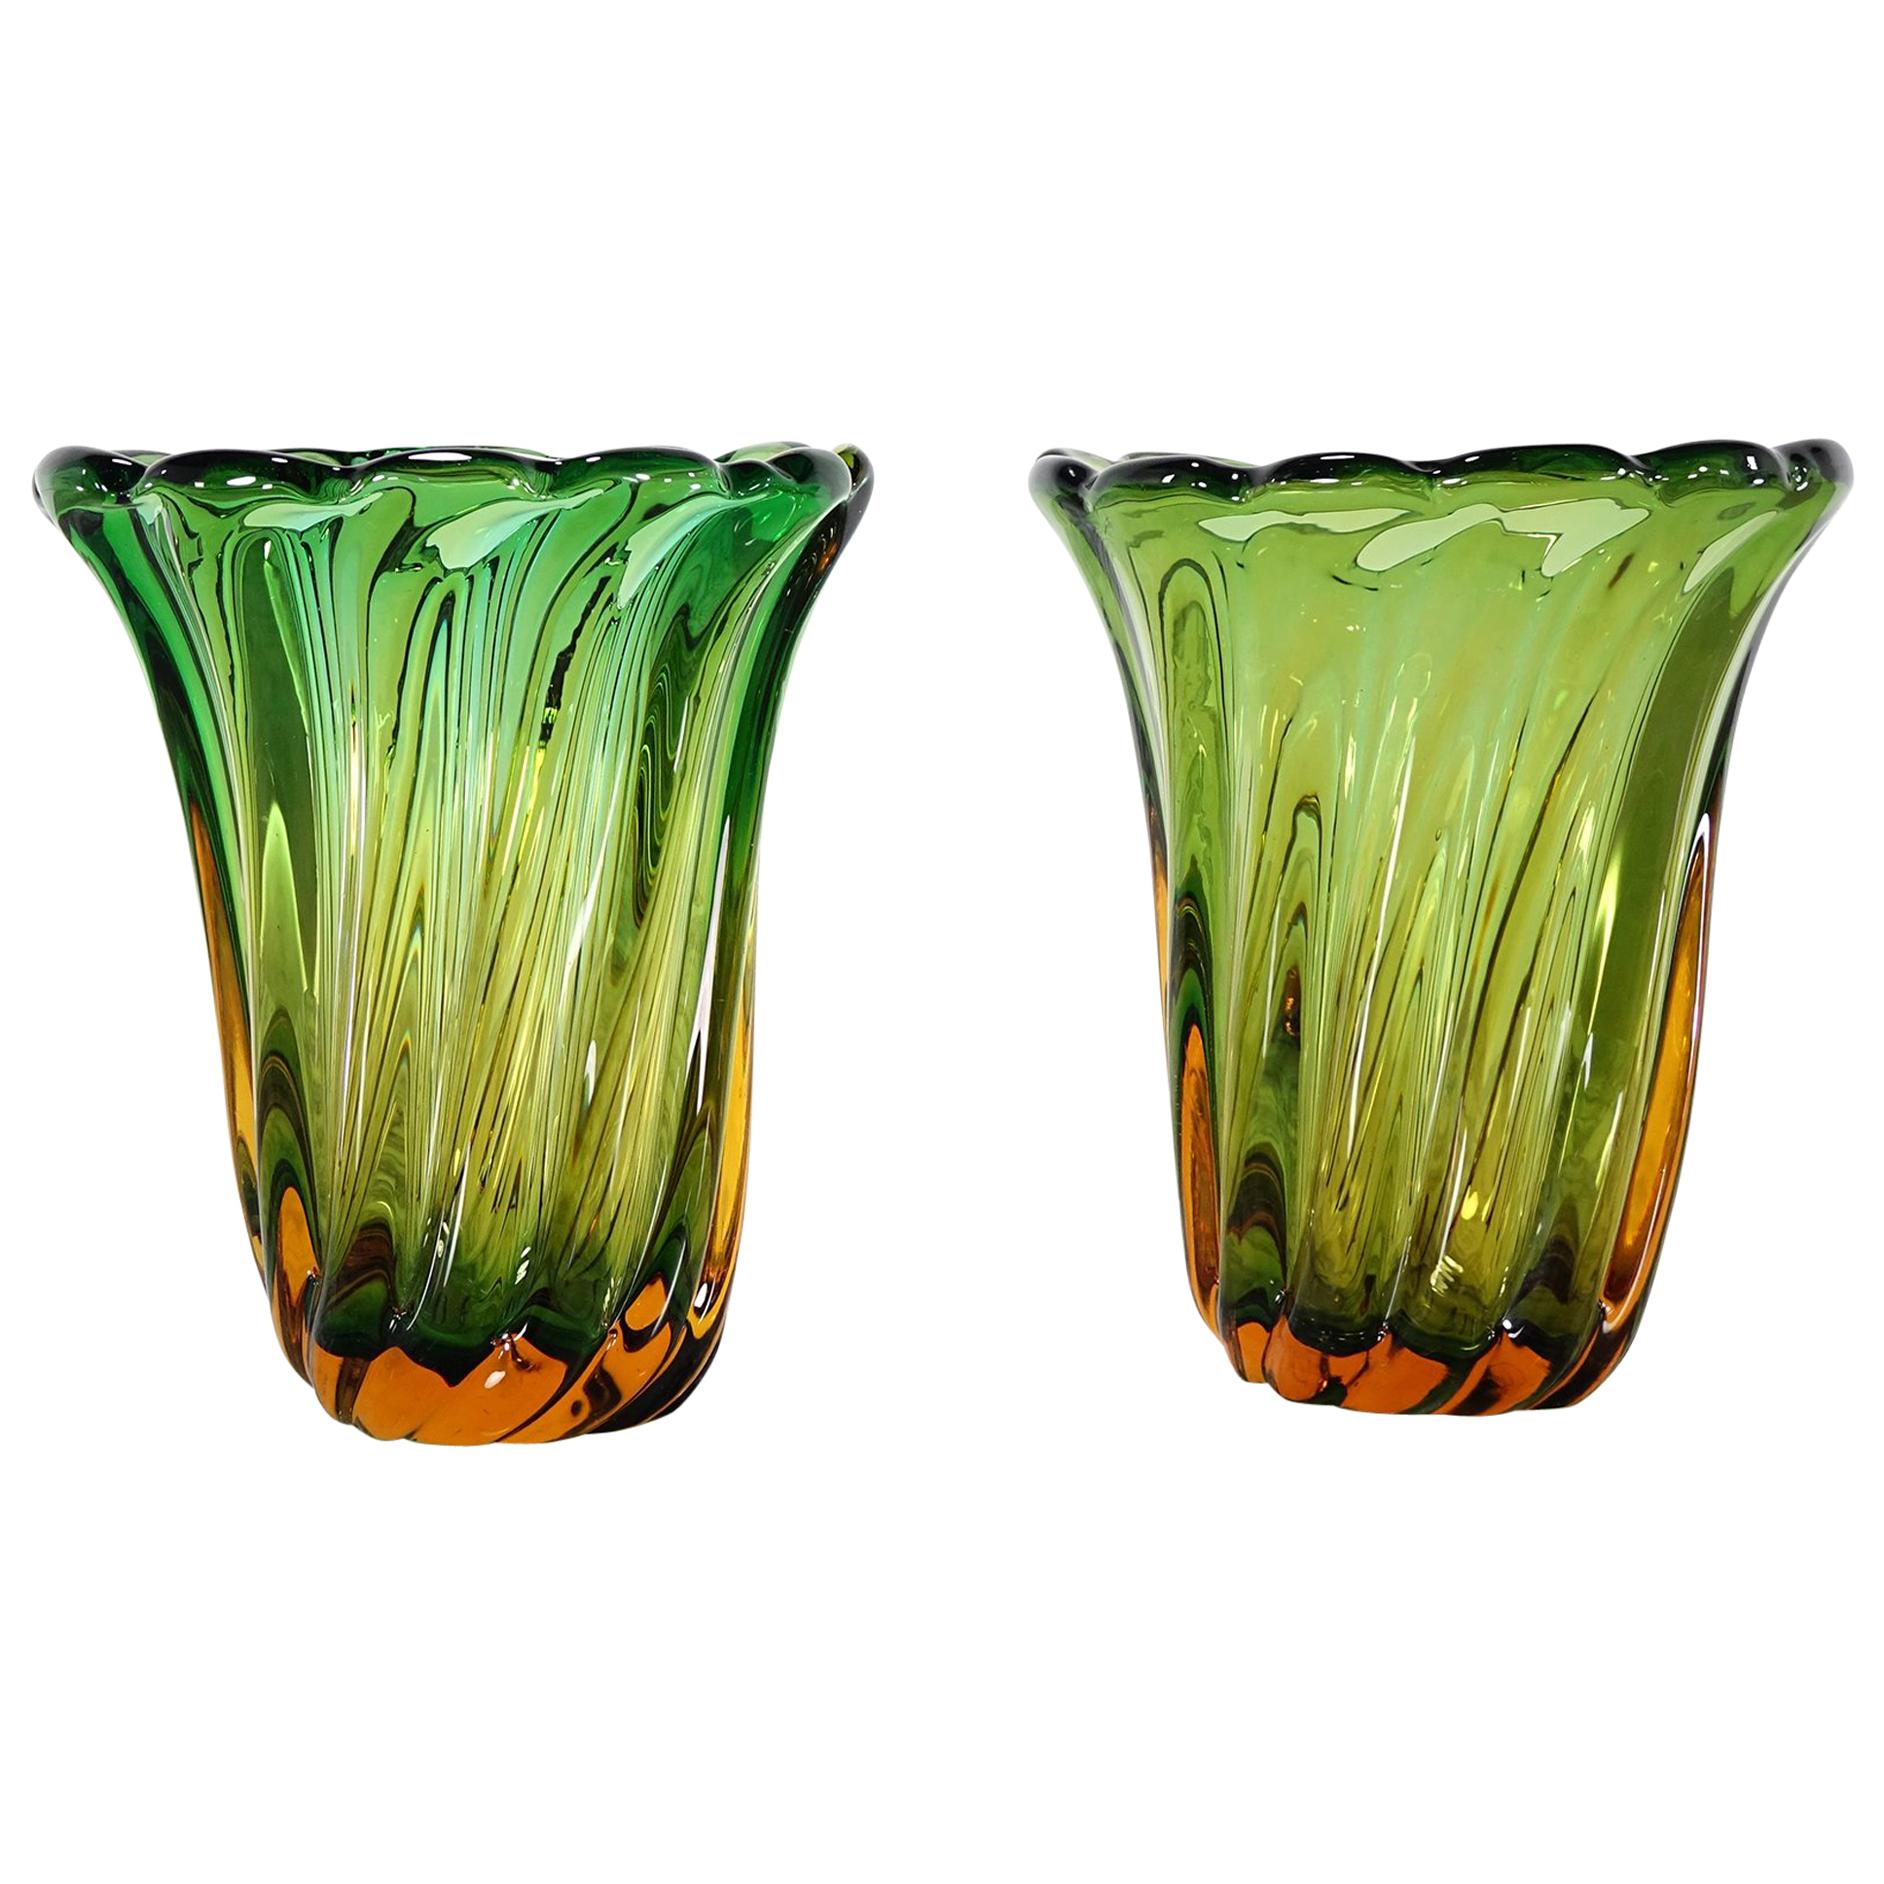 Seltenes Paar großformatiger grüner Murano-Vasen, einzigartiges, farbenfrohes Meisterwerk